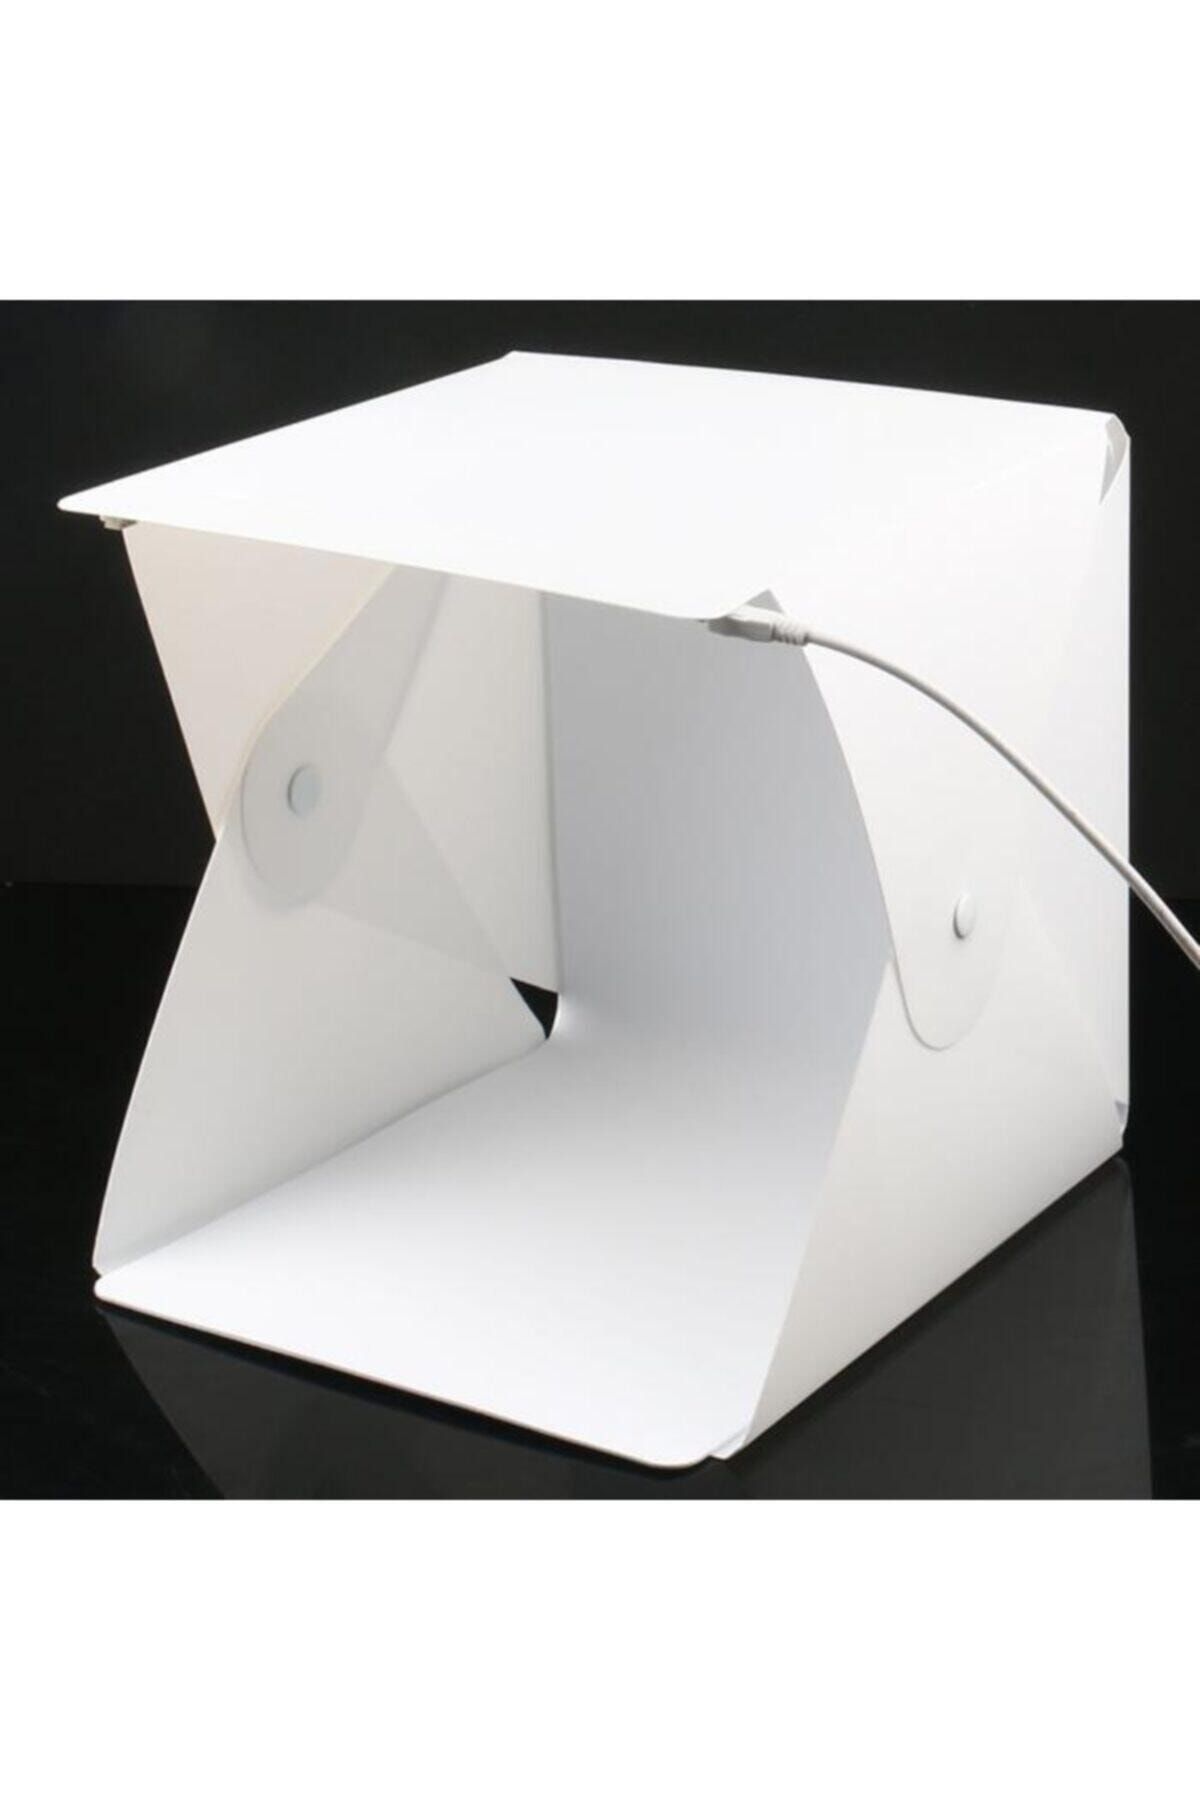 Santa Maria Jewels Mini Stüdyo Led Işıklı Ürün Fotoğraf Çekim Çadırı 20x20 Cm